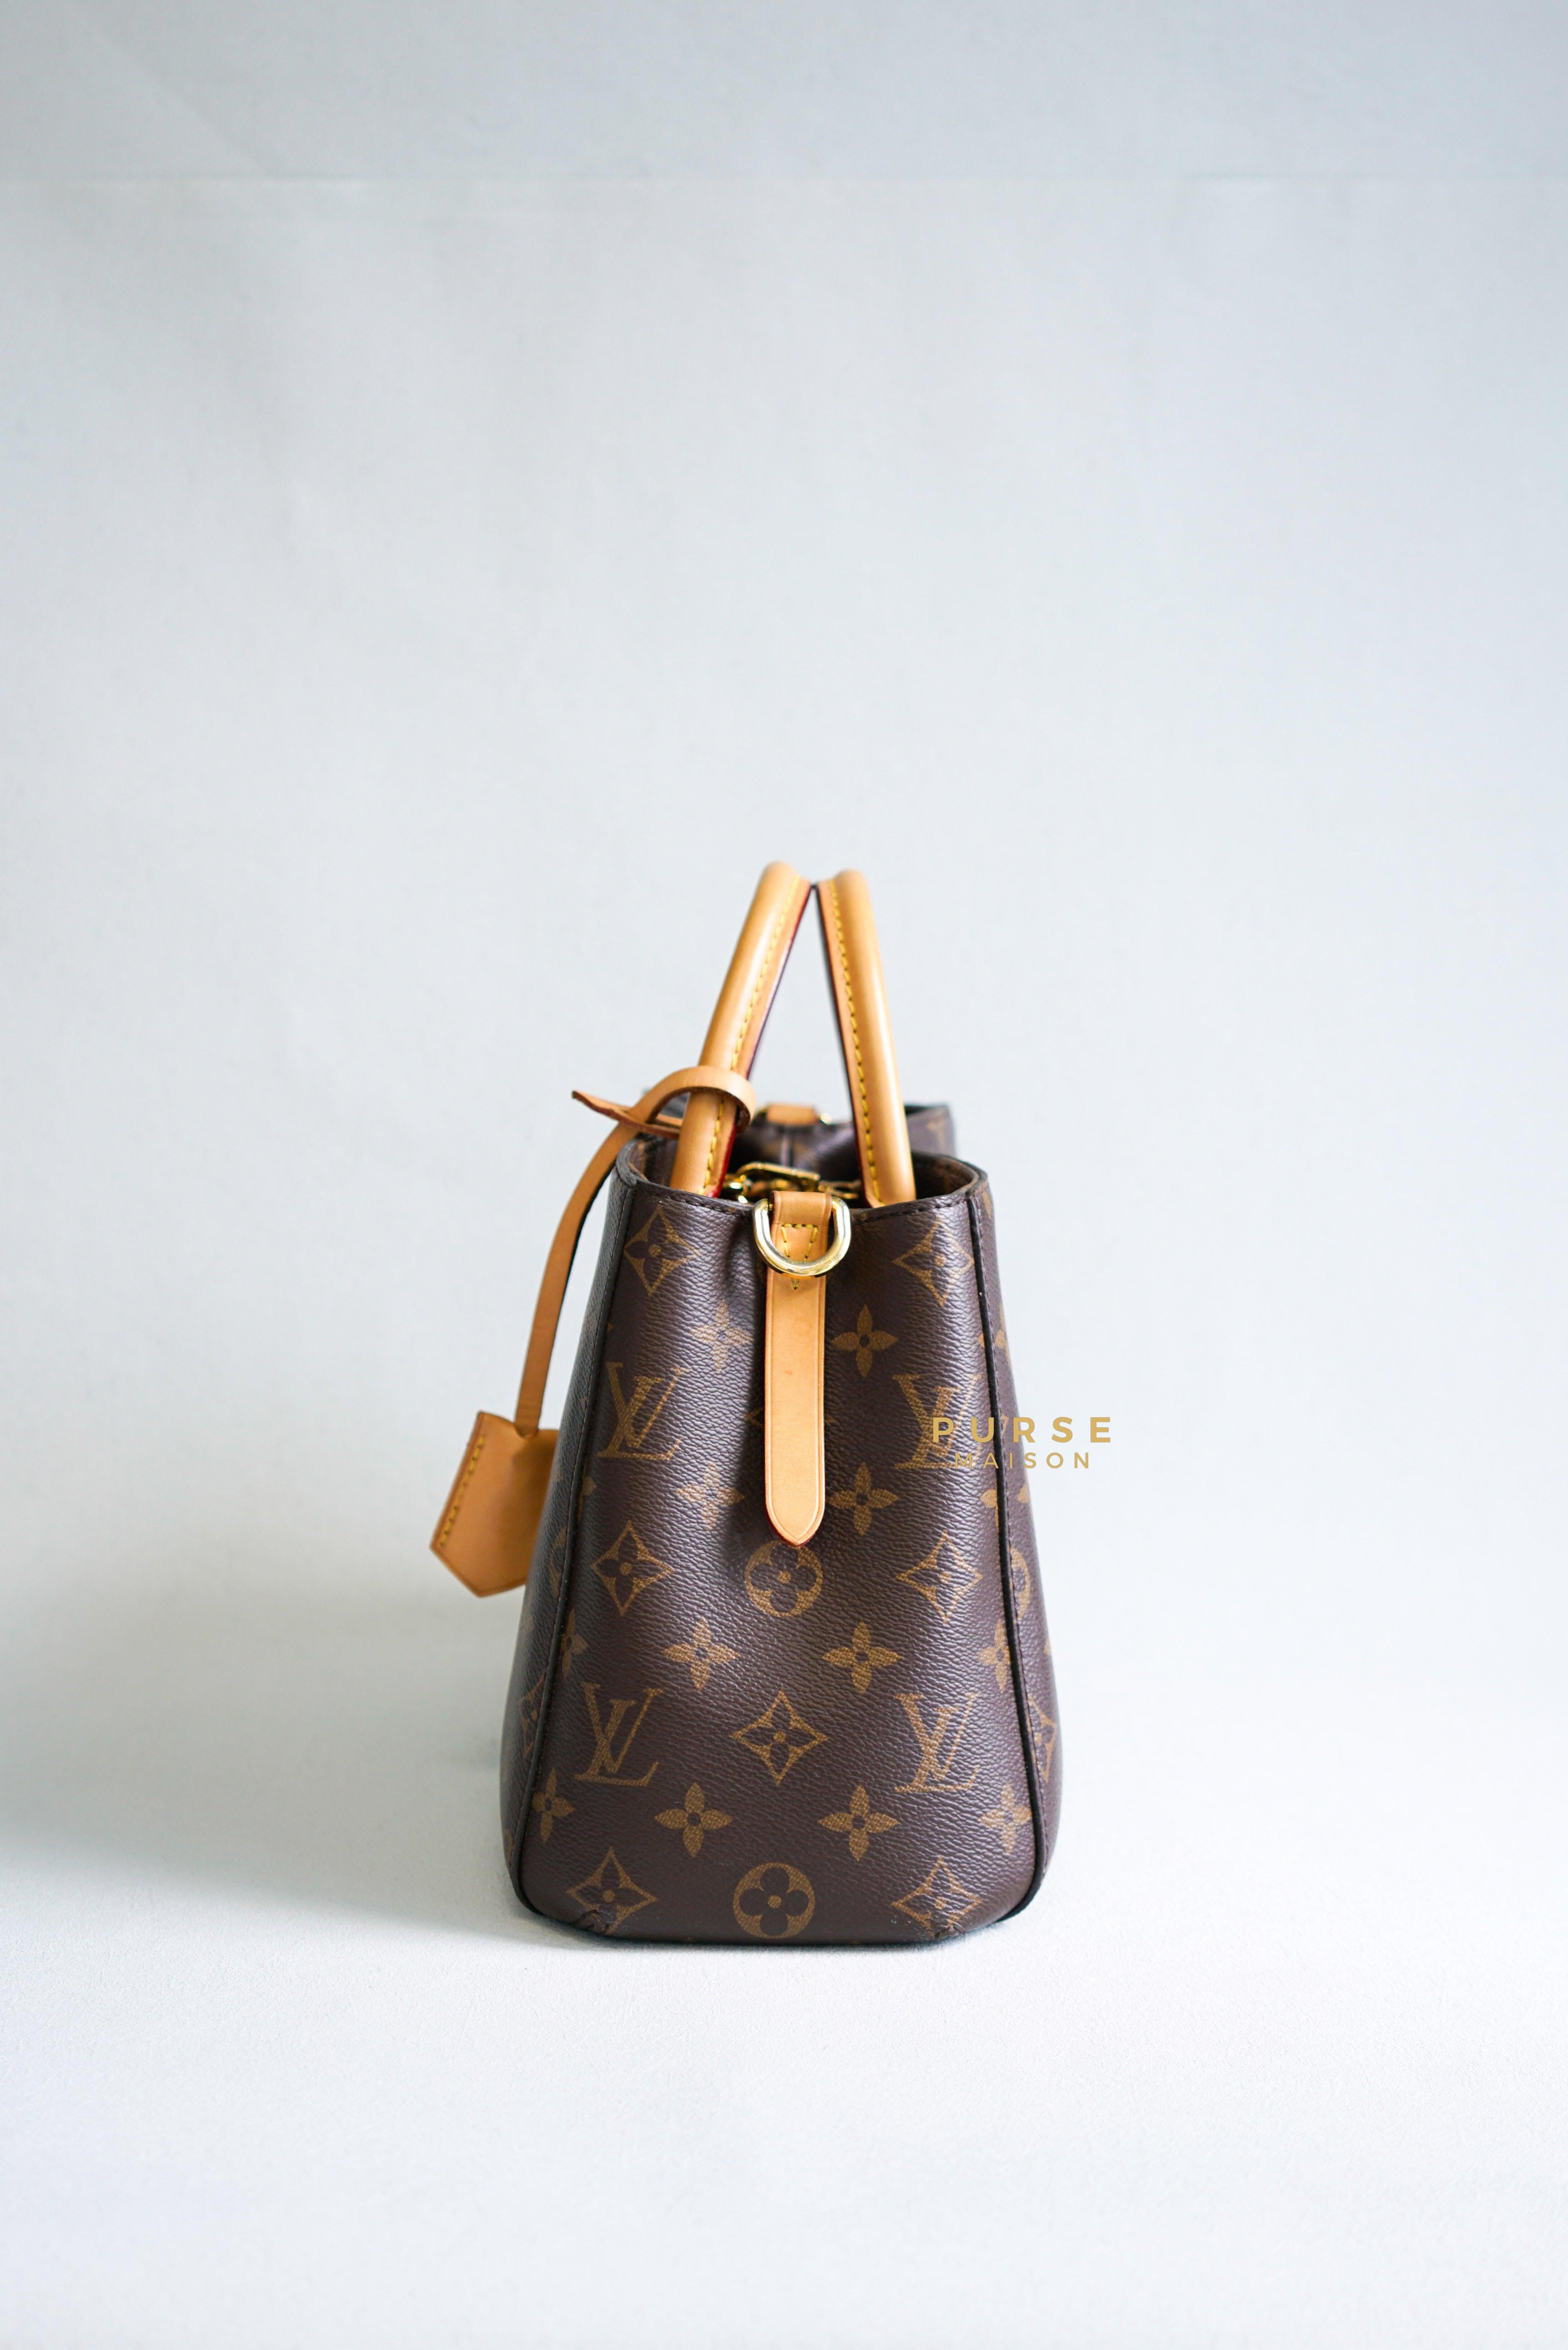 Louis Vuitton Montaigne BB in Monogram Canvas (Date code: CA4176) | Purse Maison Luxury Bags Shop